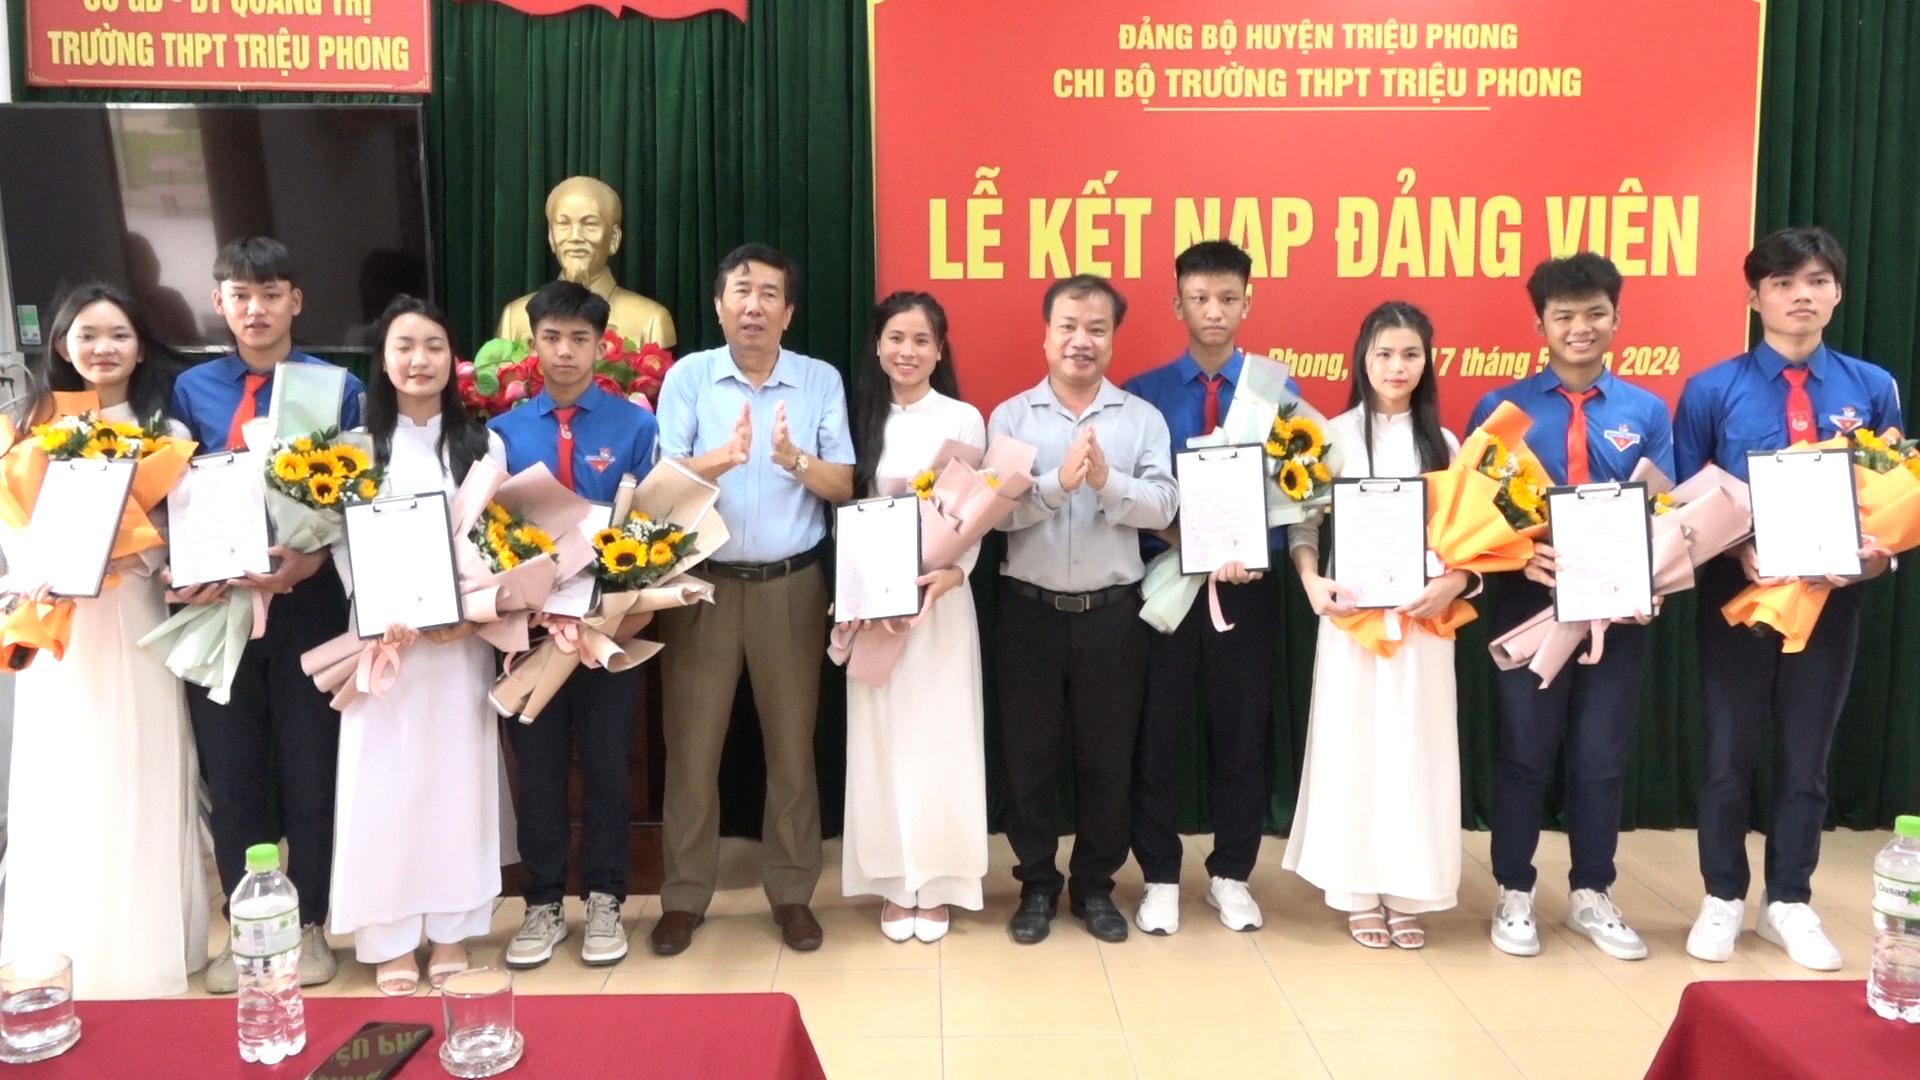 Chi bộ Trường THPT Triệu Phong: Kết nạp 9 đảng viên tuổI 18